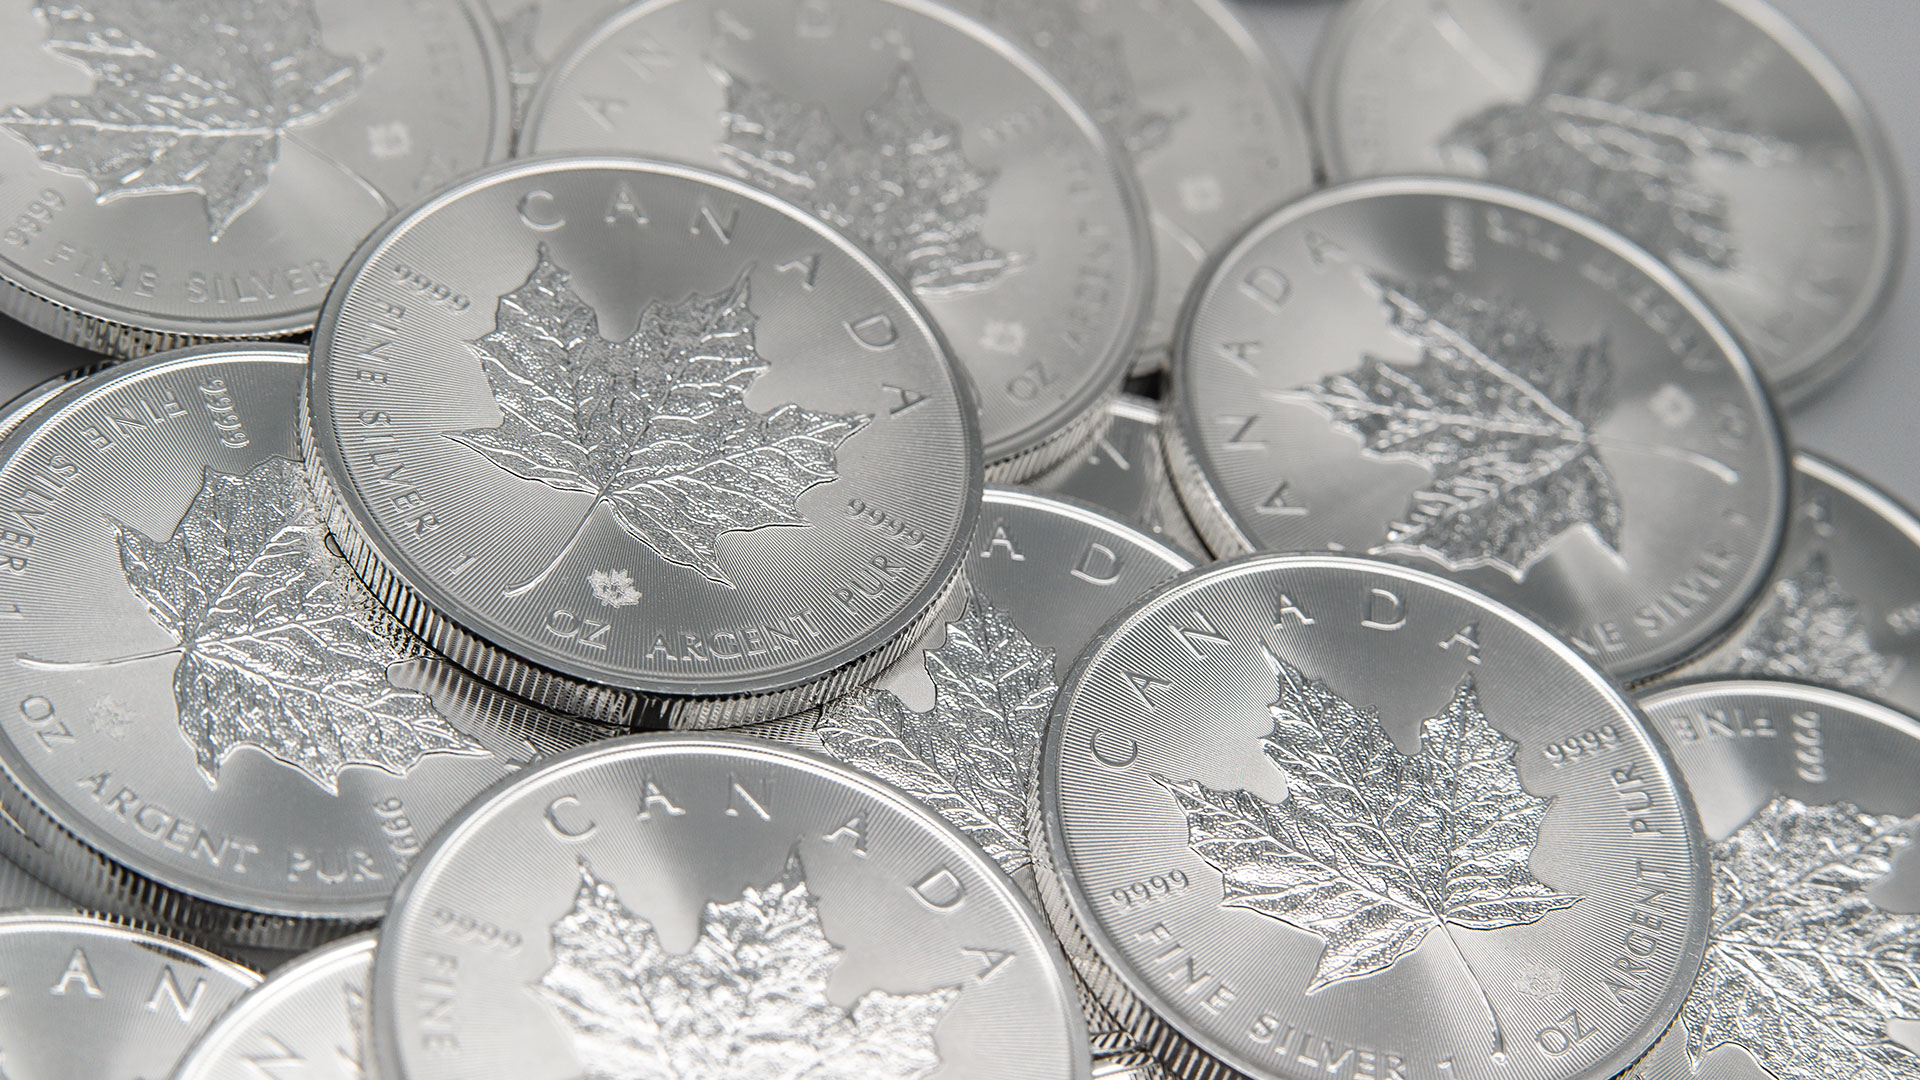 Silbermünzen werden drastisch teurer – Aufruhr bei Anlegern und Händlern  (Foto: Shutterstock)